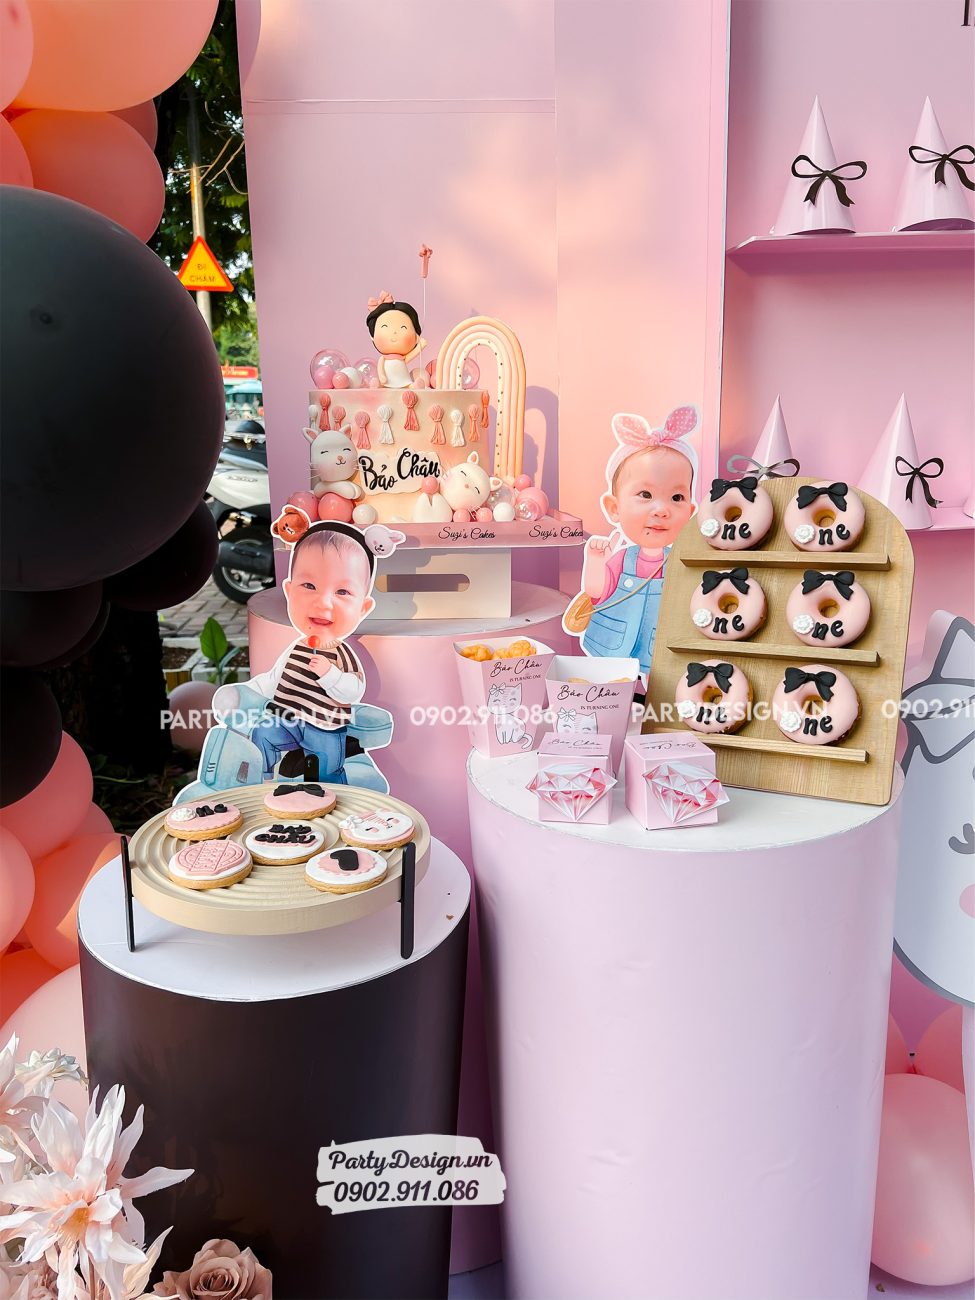 Trang trí bàn gallery, bàn quà bánh kẹo tone màu hồng cho bé gái - Bảo Châu